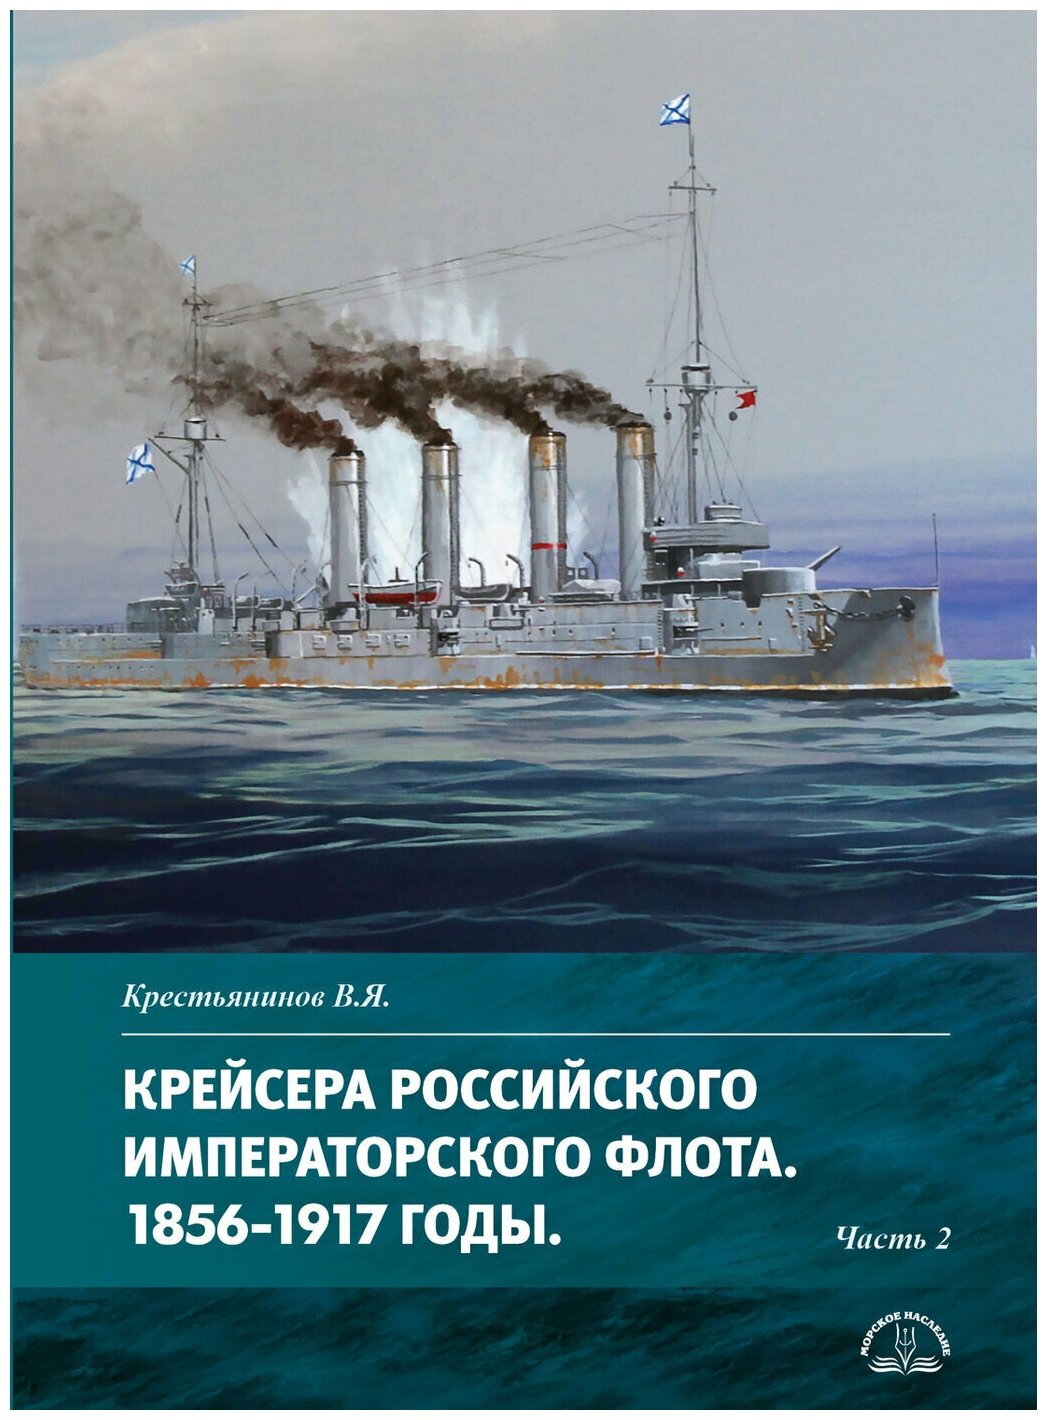 Крейсера Российского императорского флота 1856-1917 годы Часть 2 - фото №1